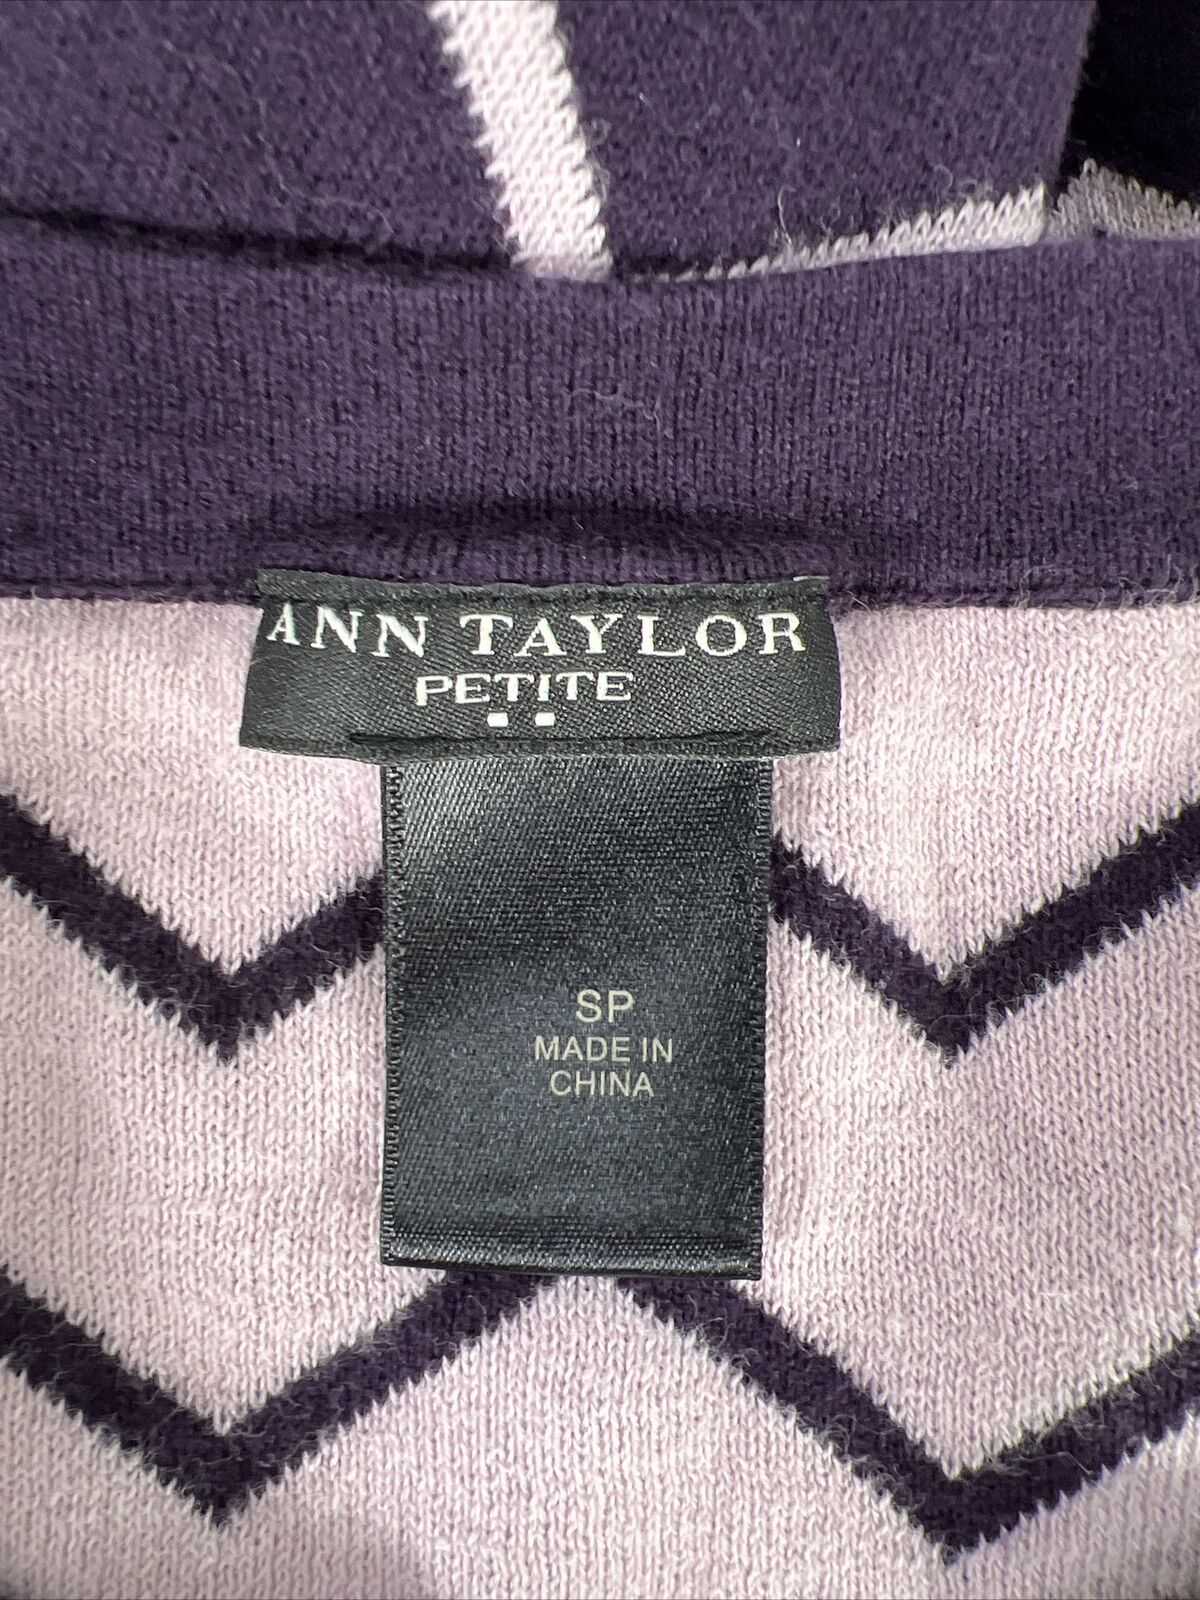 Ann Taylor Women's Purple 3/4 Sleeve Sweater - Petite S